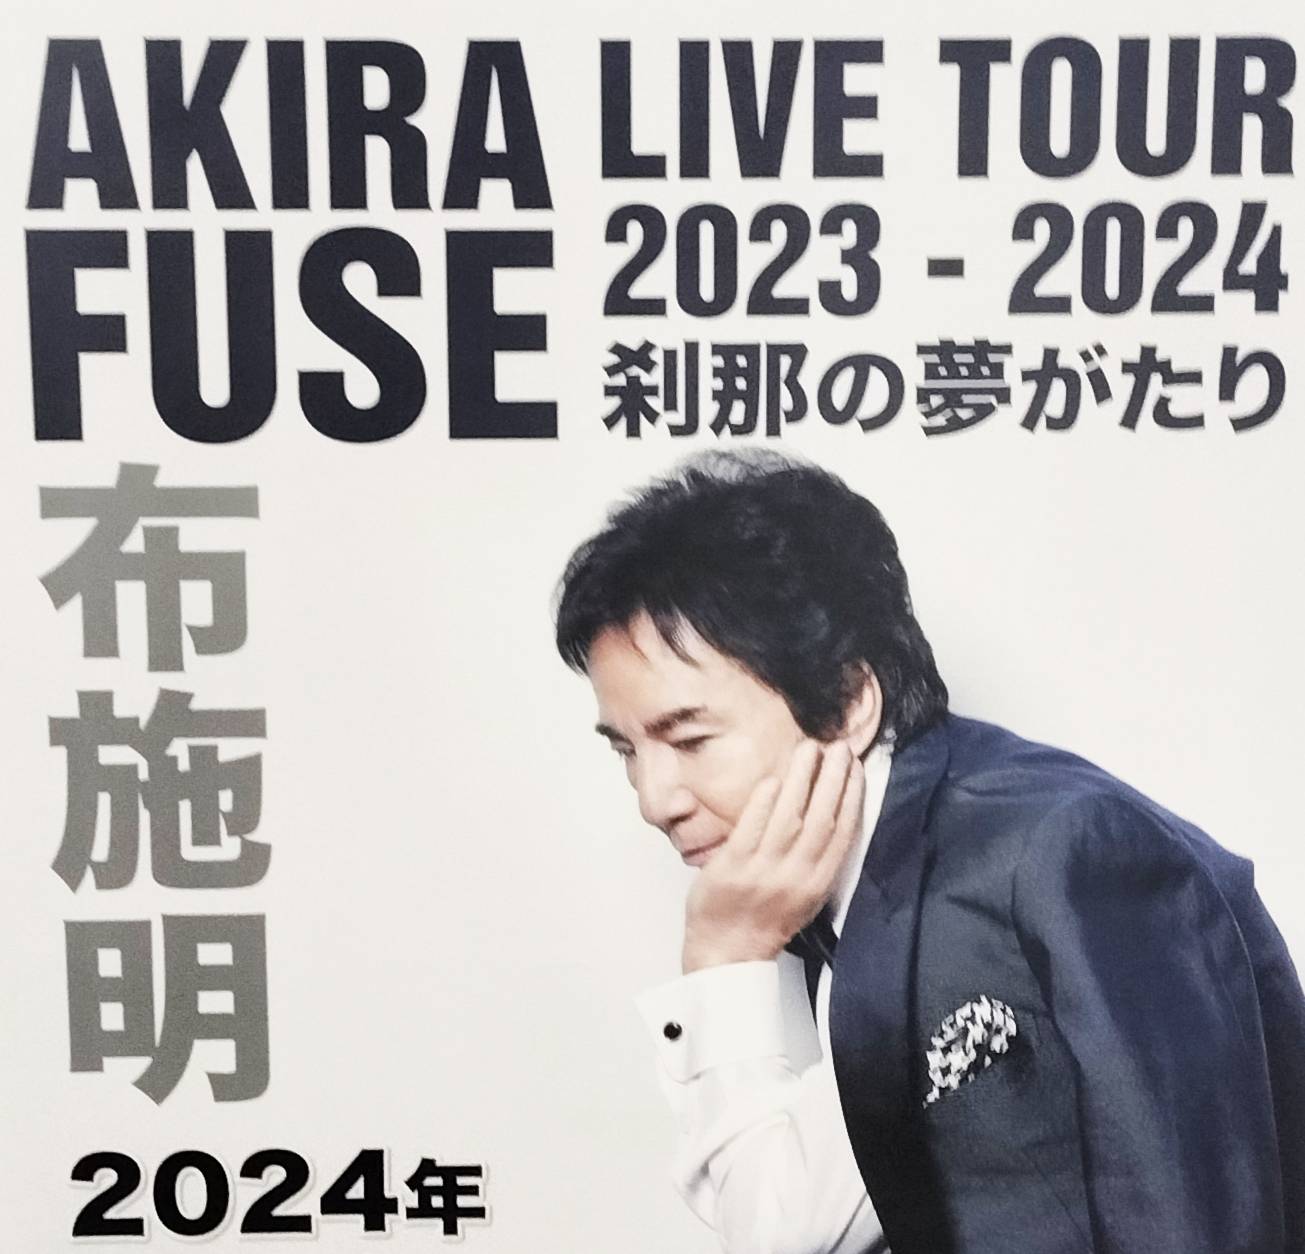 布施明ライブツアー2023-2024千葉県松戸公演森のホール21コンサート